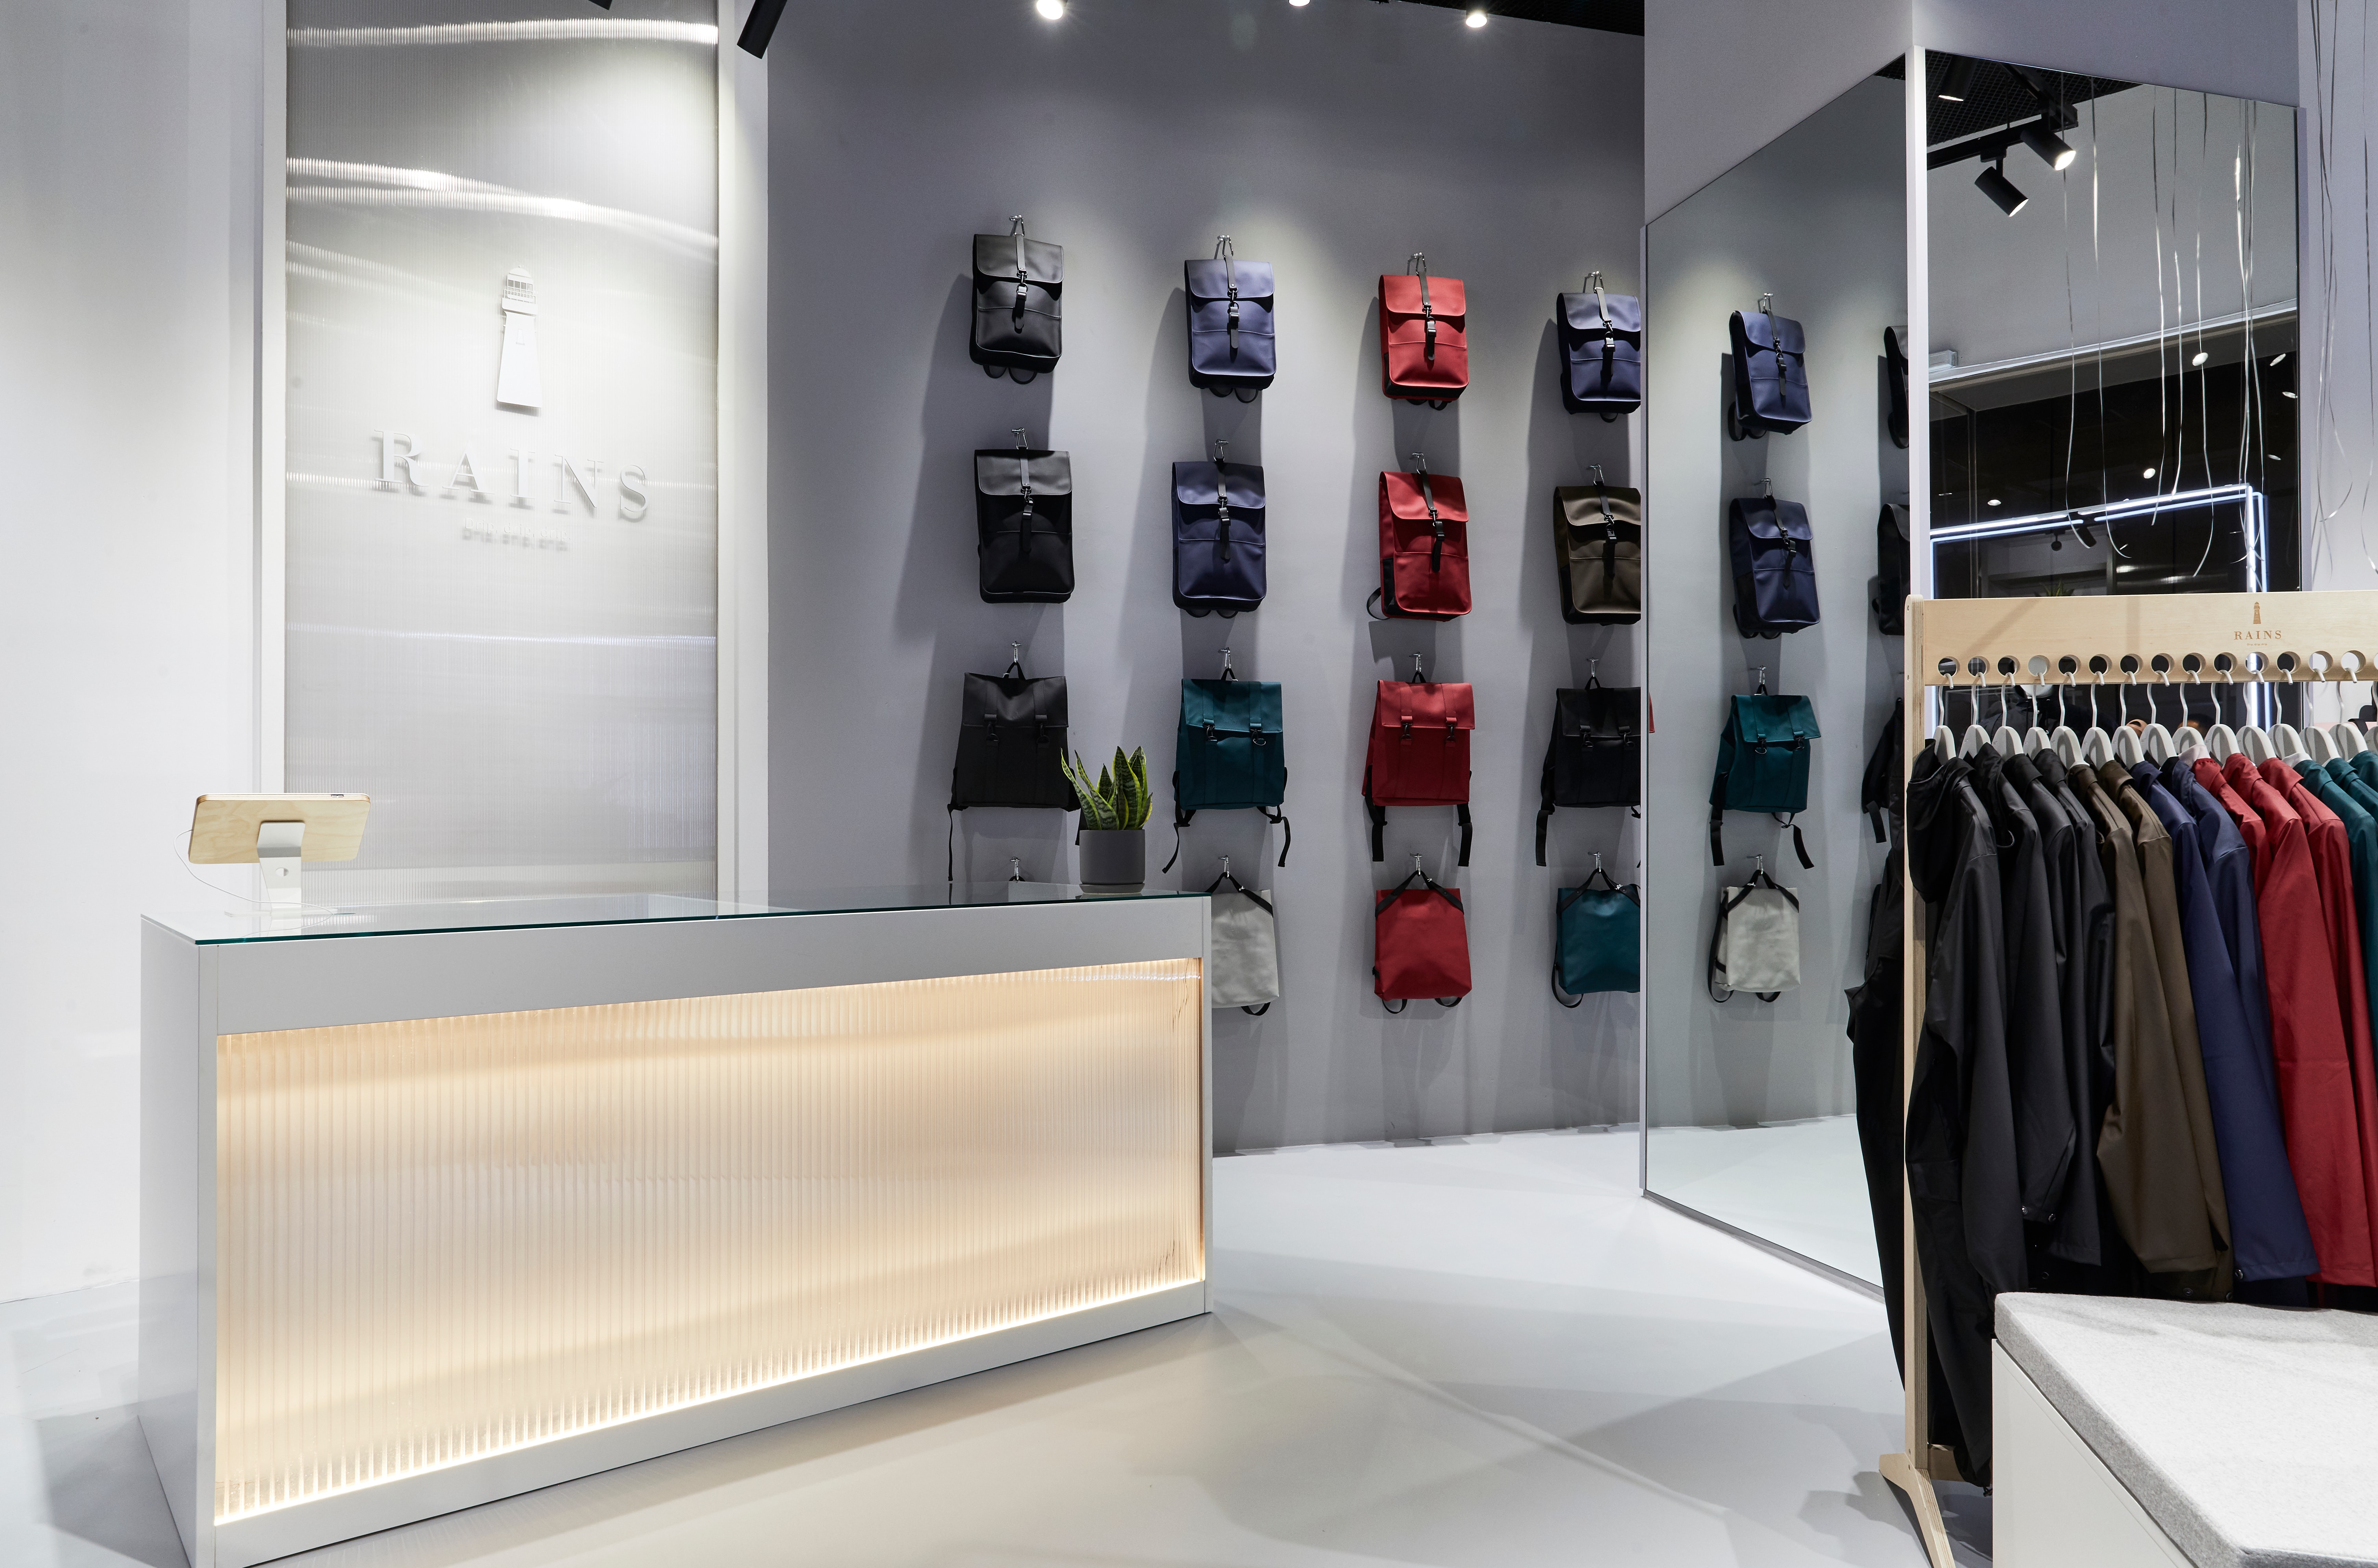 丹麦时装雨衣品牌 Rains 开设首家亚洲门店